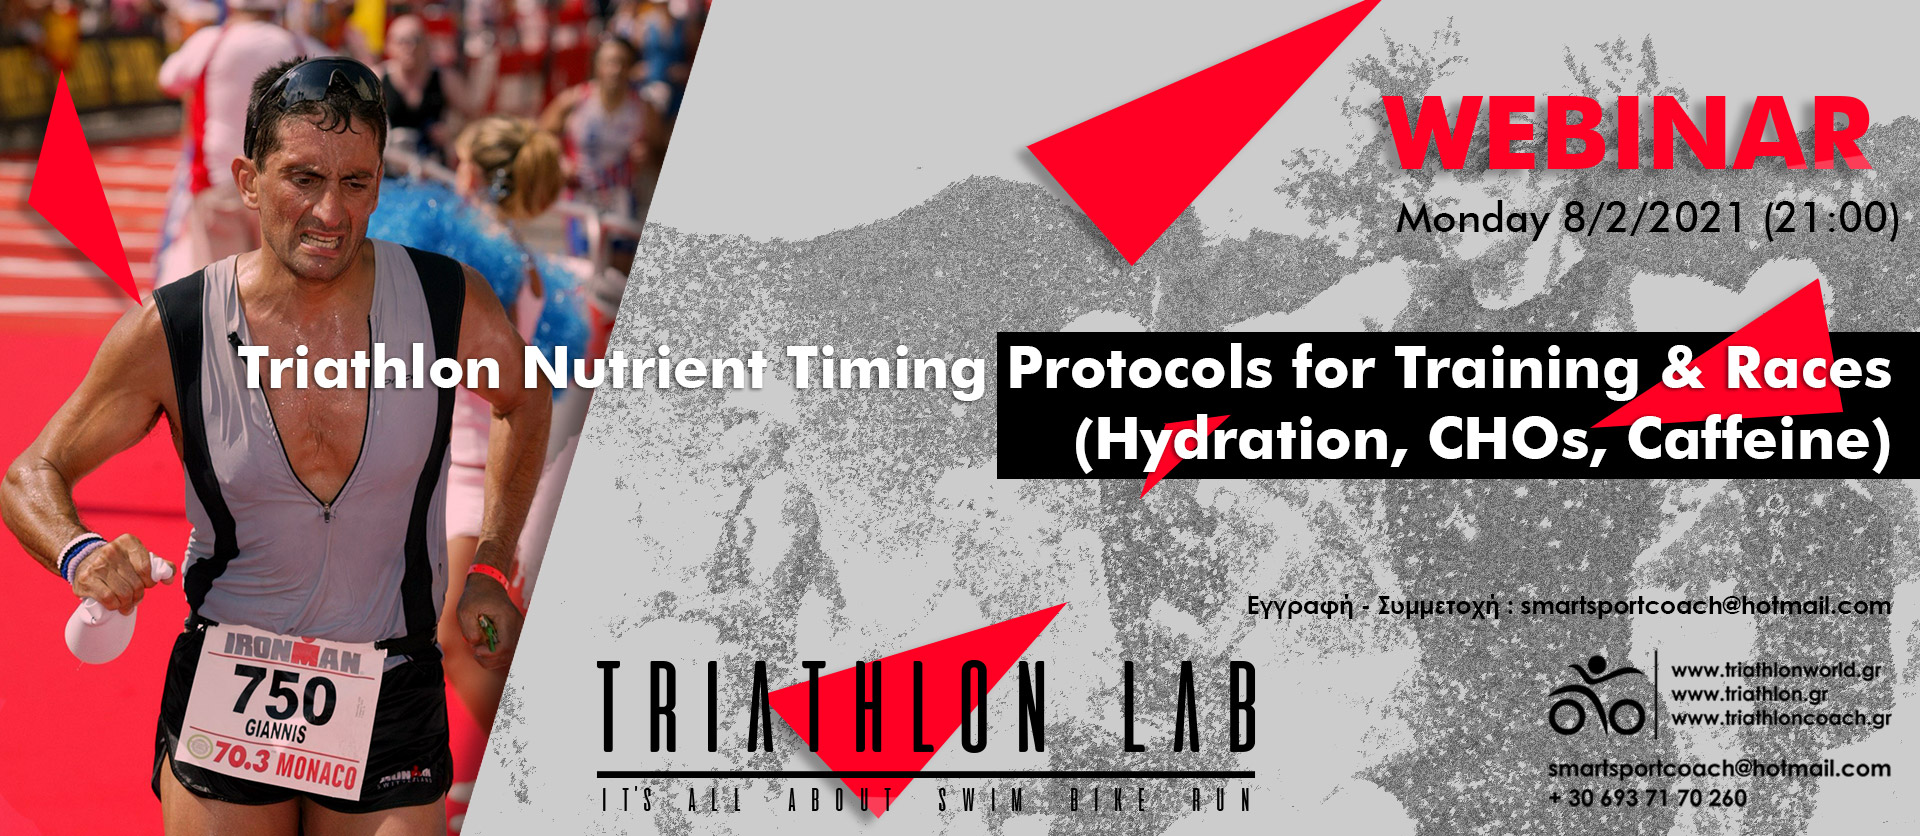 Triathlon Webinar Hydration & Nutrient Timing in Trainins & Races